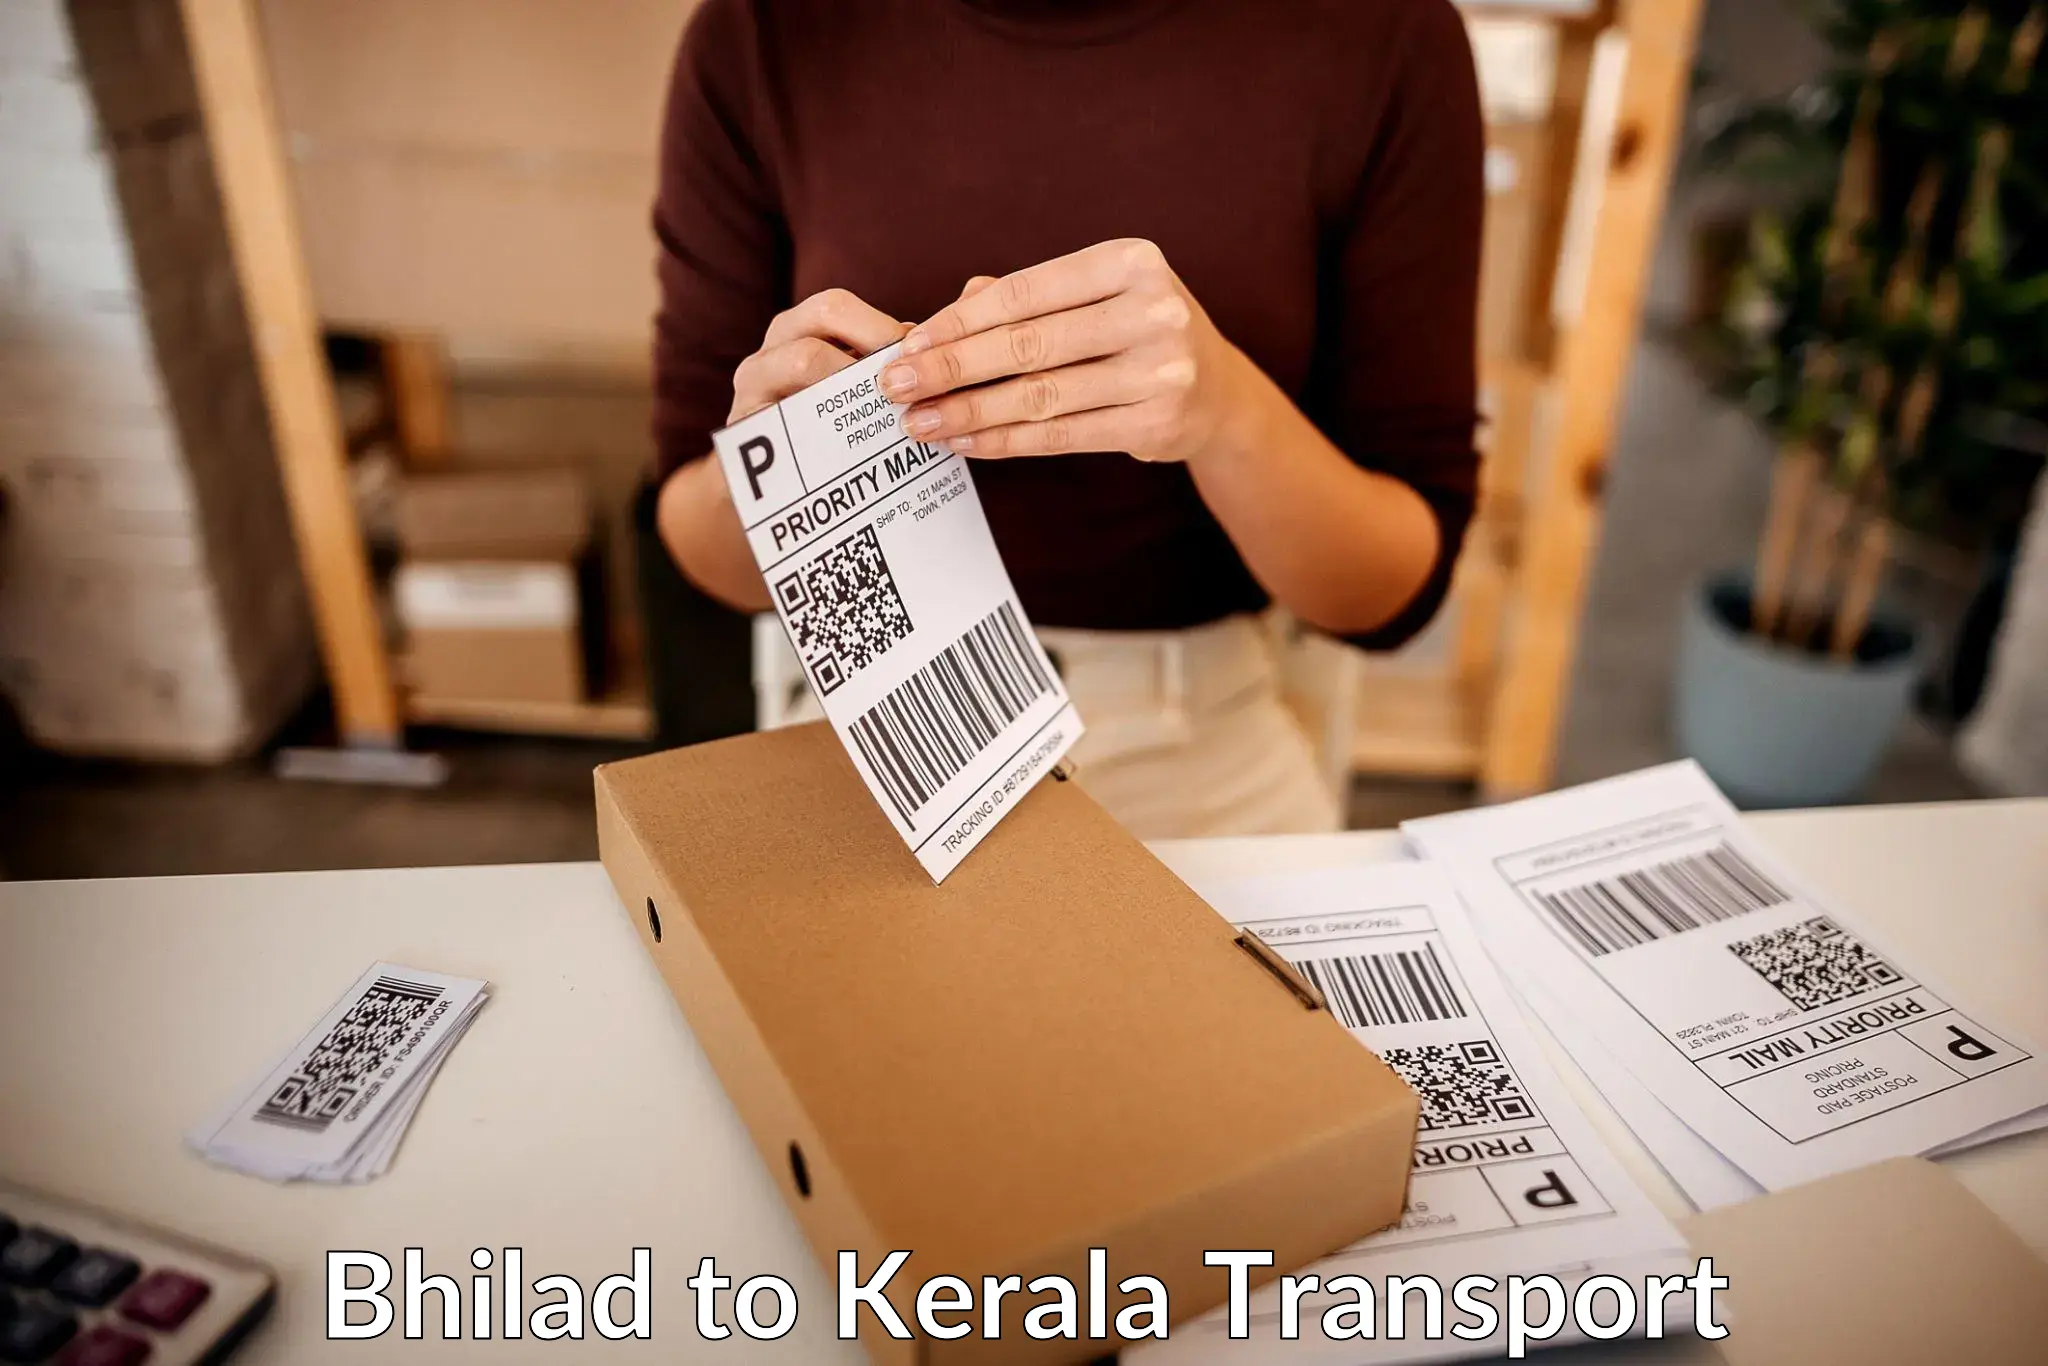 Goods delivery service Bhilad to Manjeshwar